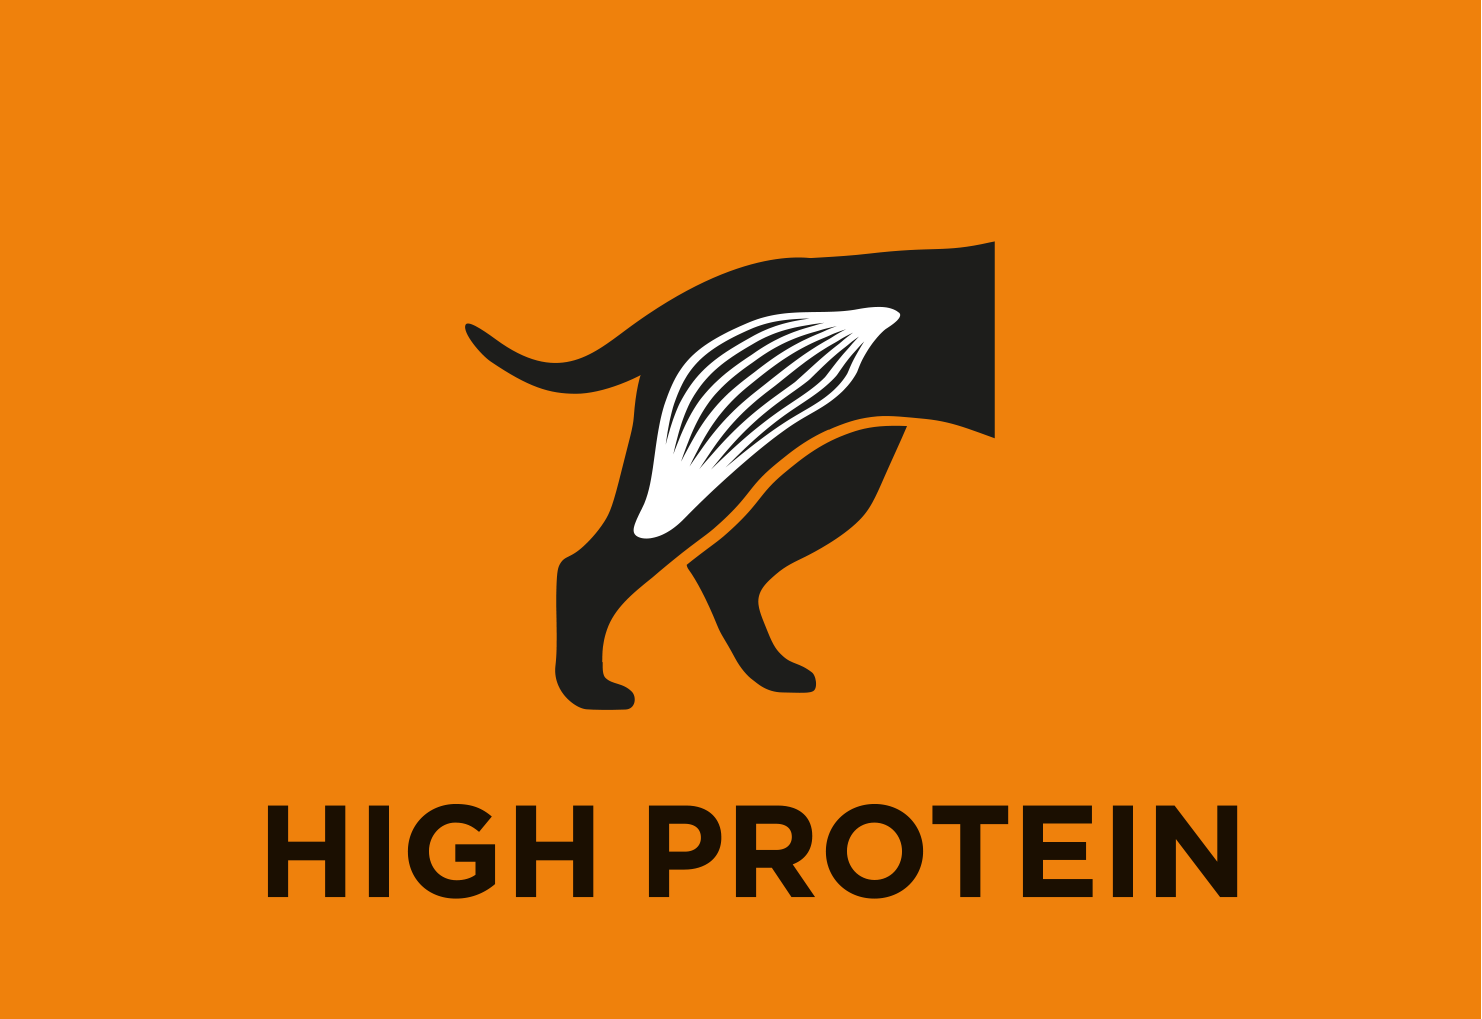 Alto livello di proteine